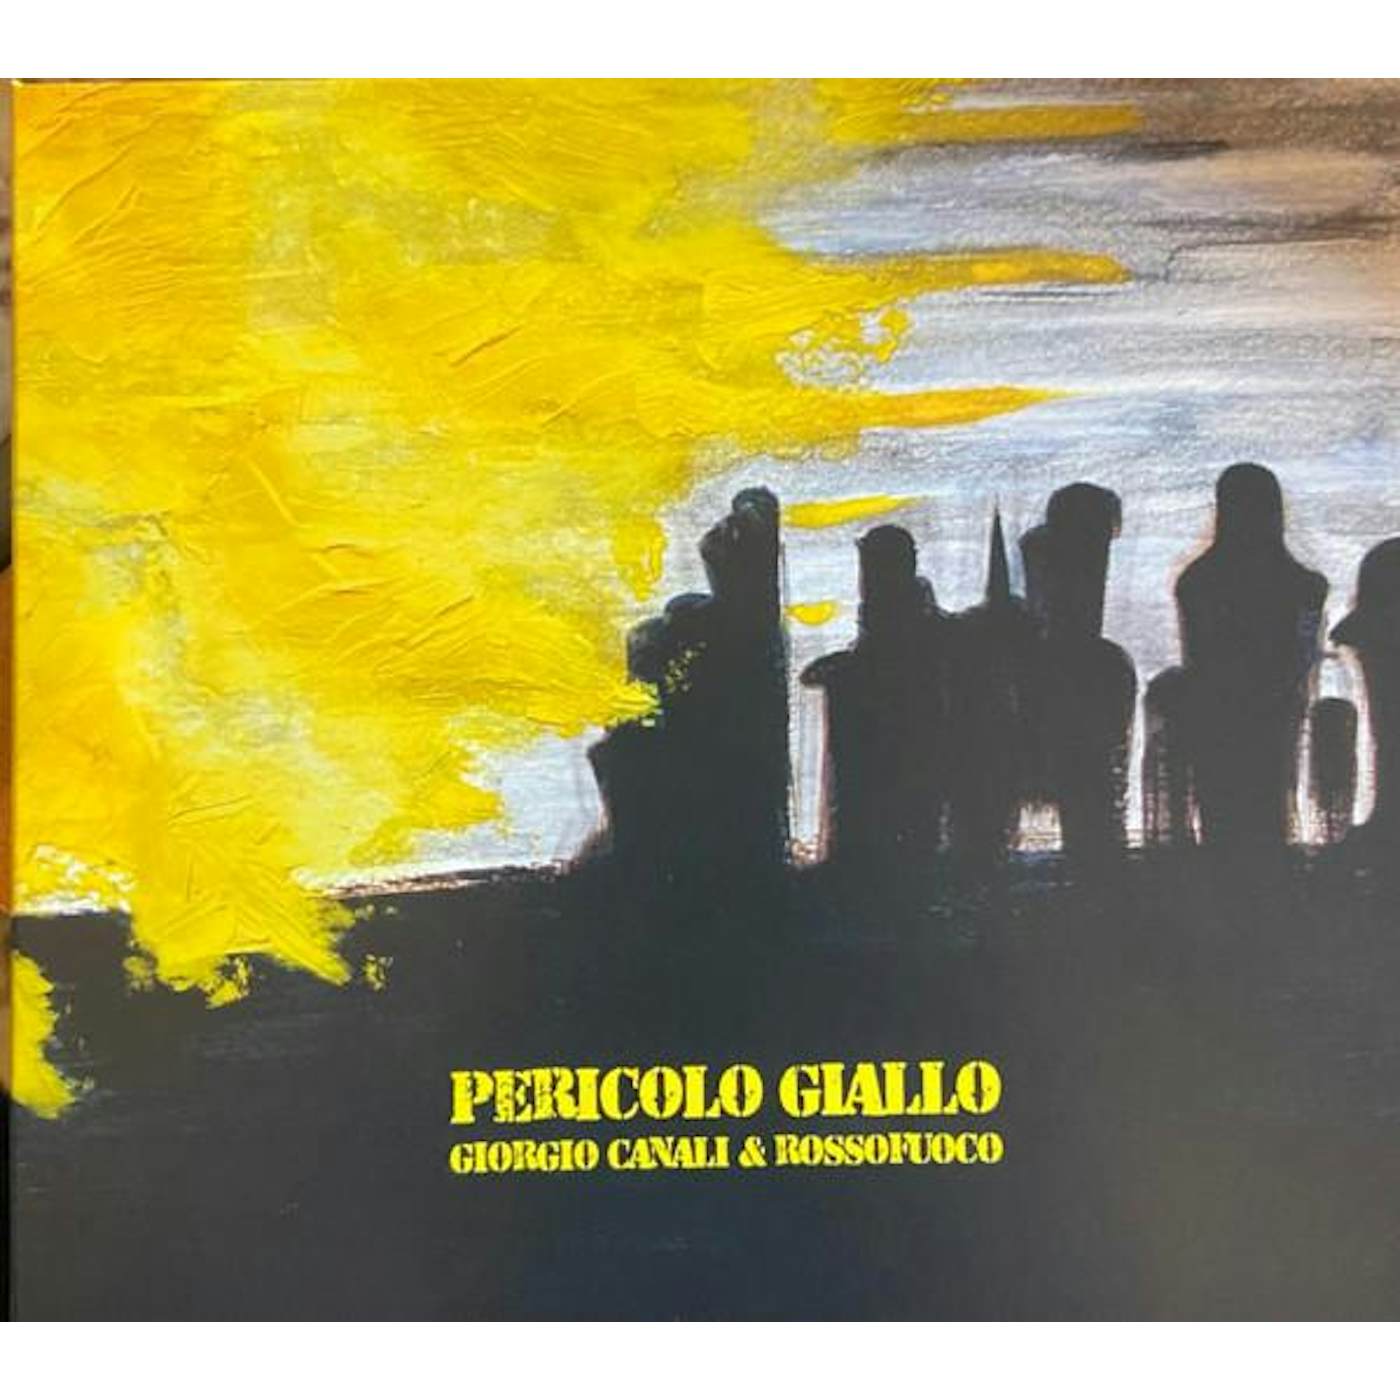 Giorgio Canali & Rossofuoco PERICOLO GIALLO CD